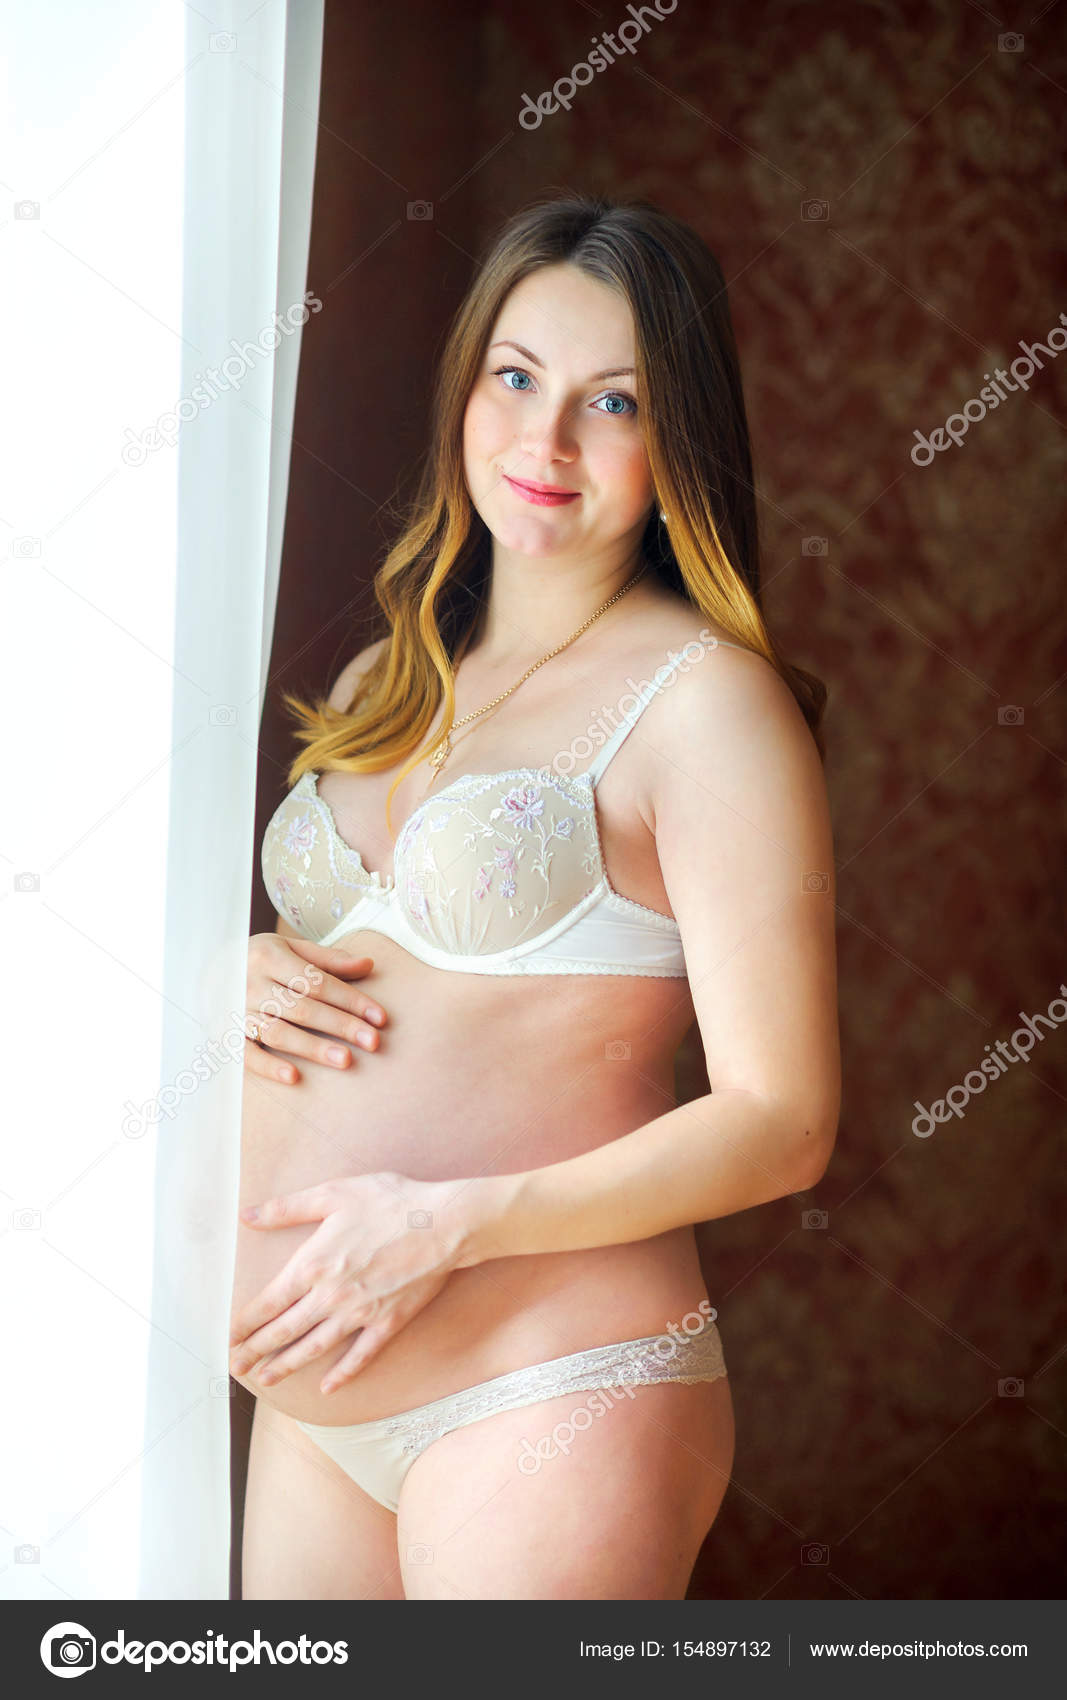 Pregnant Erotica - Gorgeous naked pregnant women - XXX photo